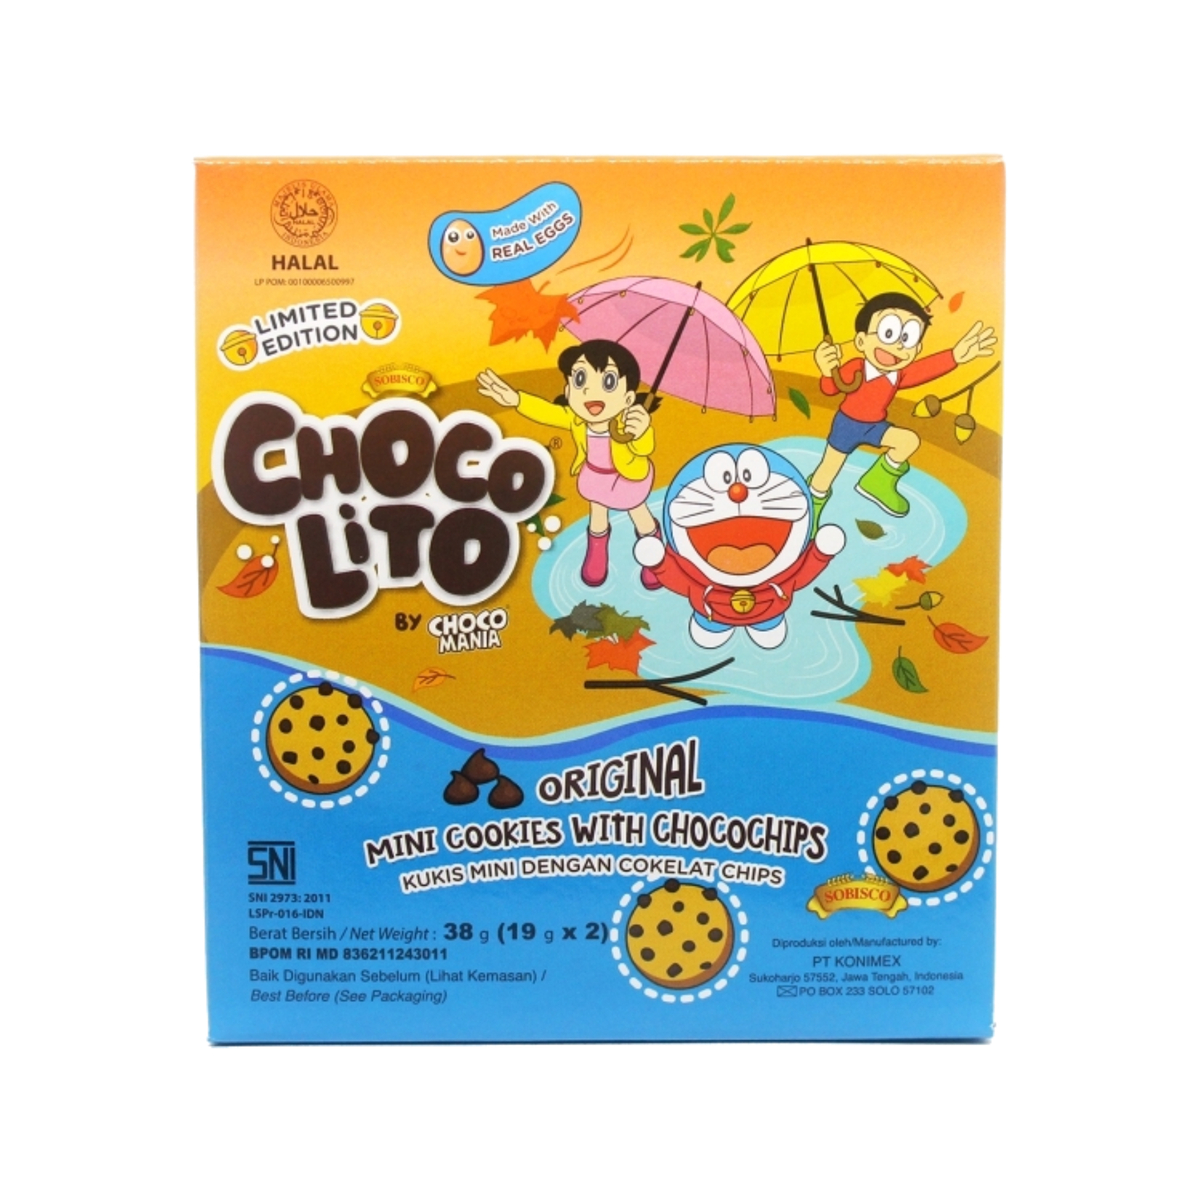 Chocolito Mini Cookies Original 38g